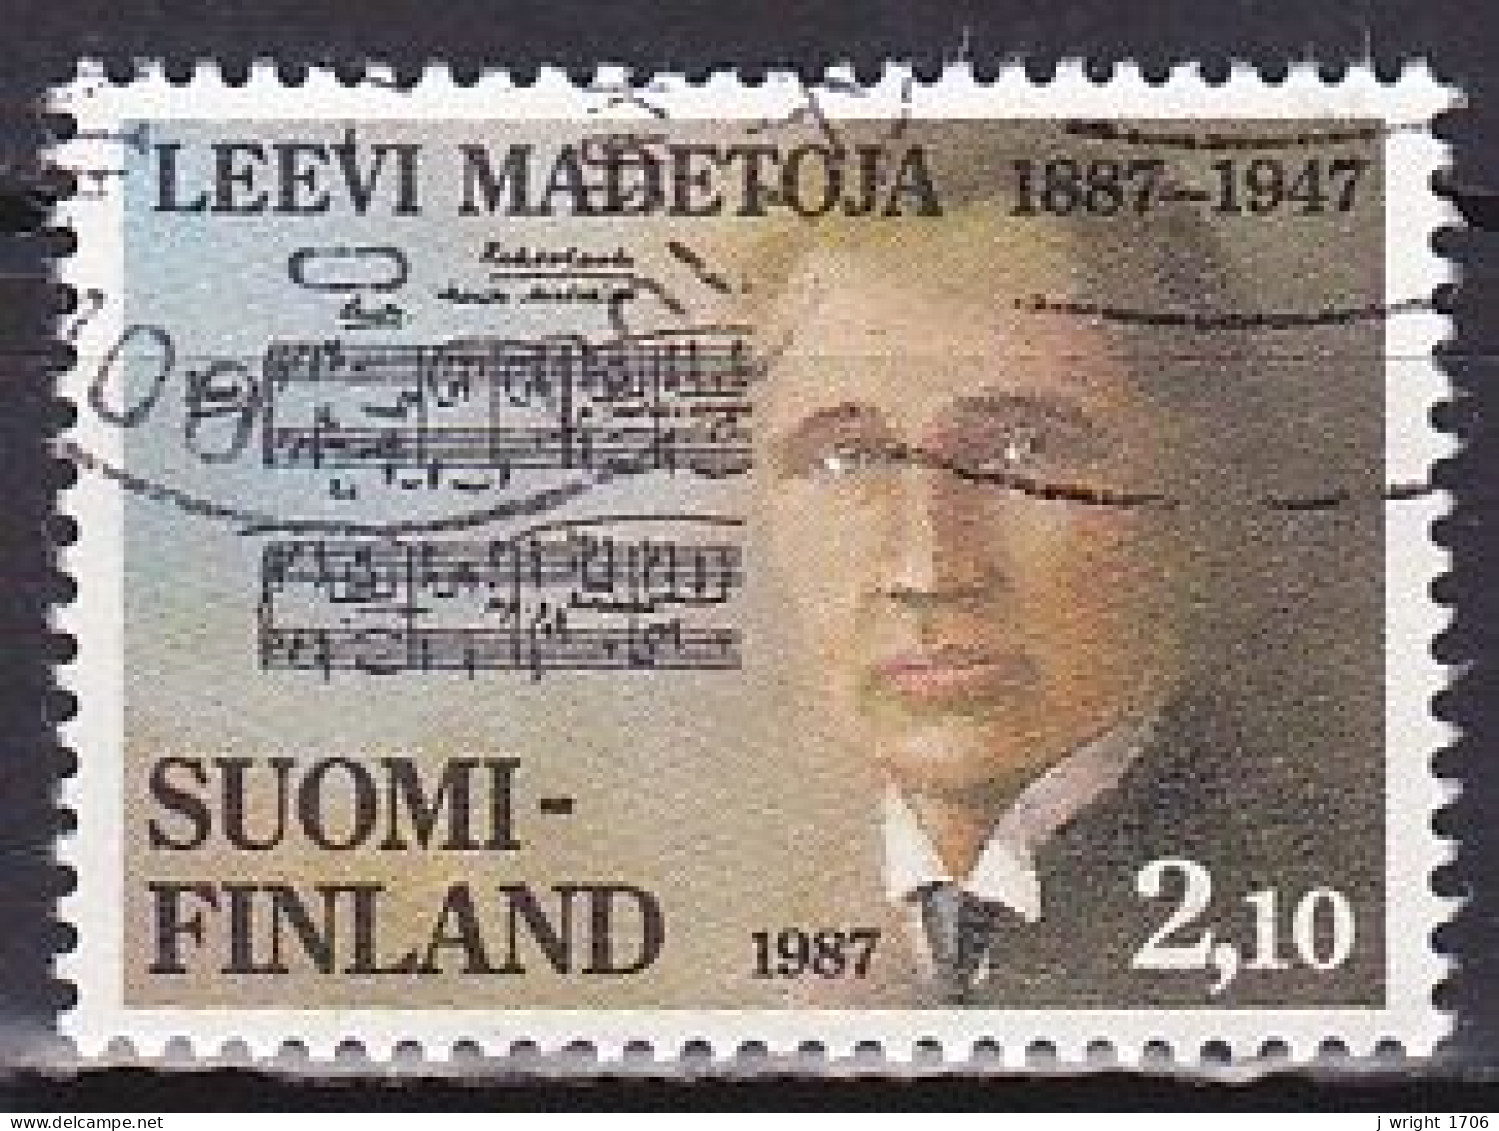 Finland, 1987, Leevi Madetoja, Set, USED - Used Stamps